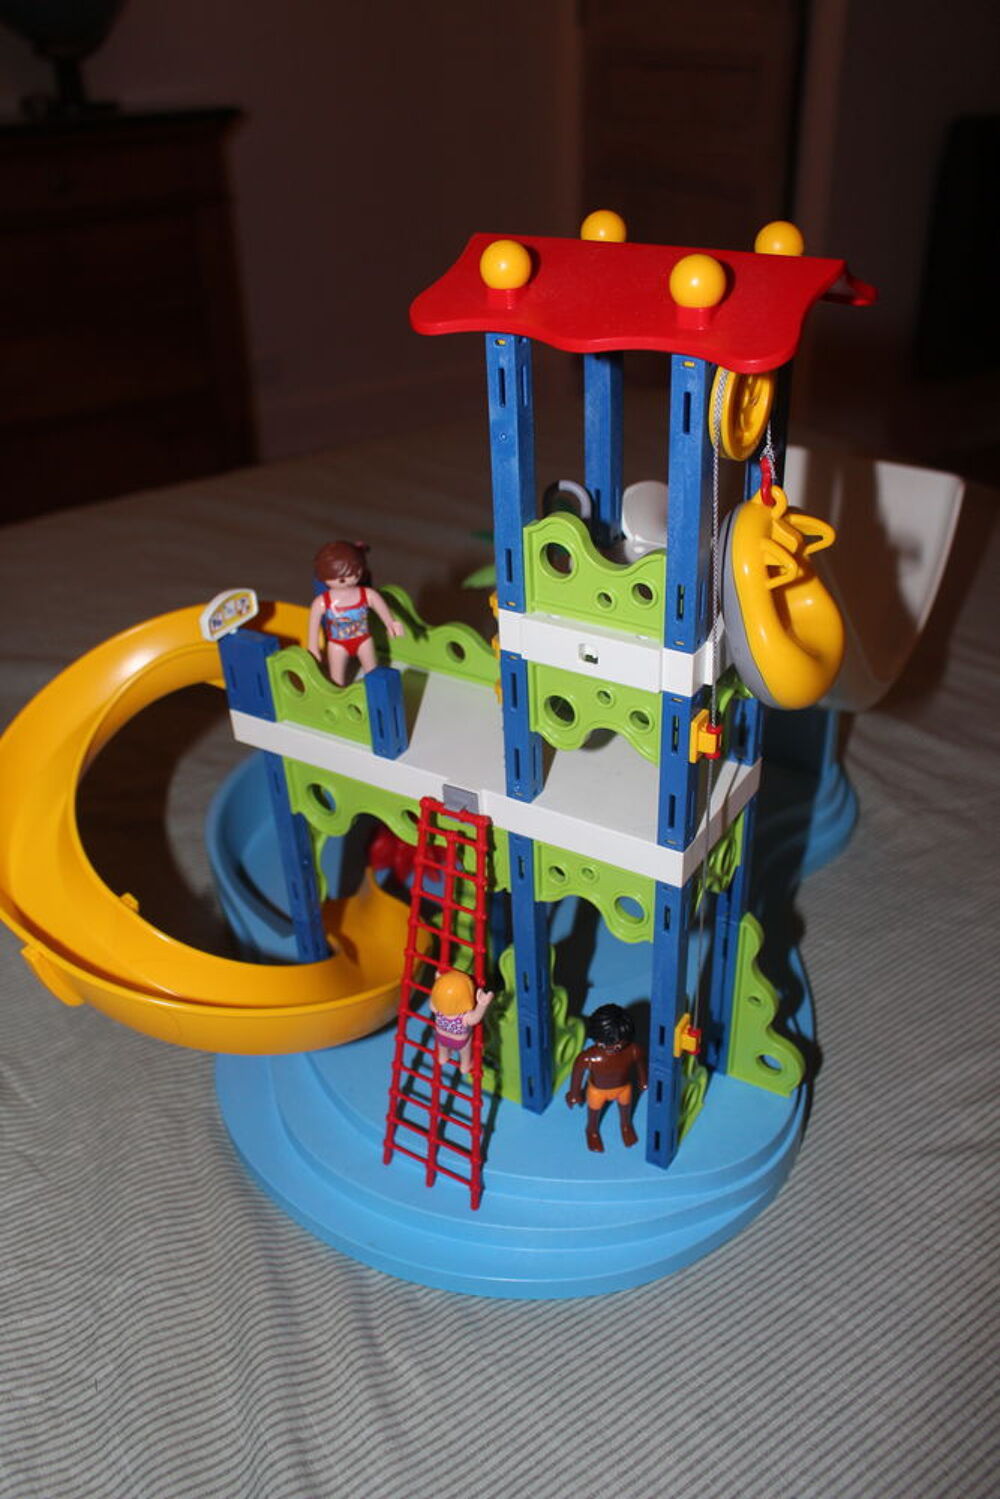 Playmobil - Parc aquatique avec toboggan g&eacute;ant &quot;Summer Fun&quot; Jeux / jouets